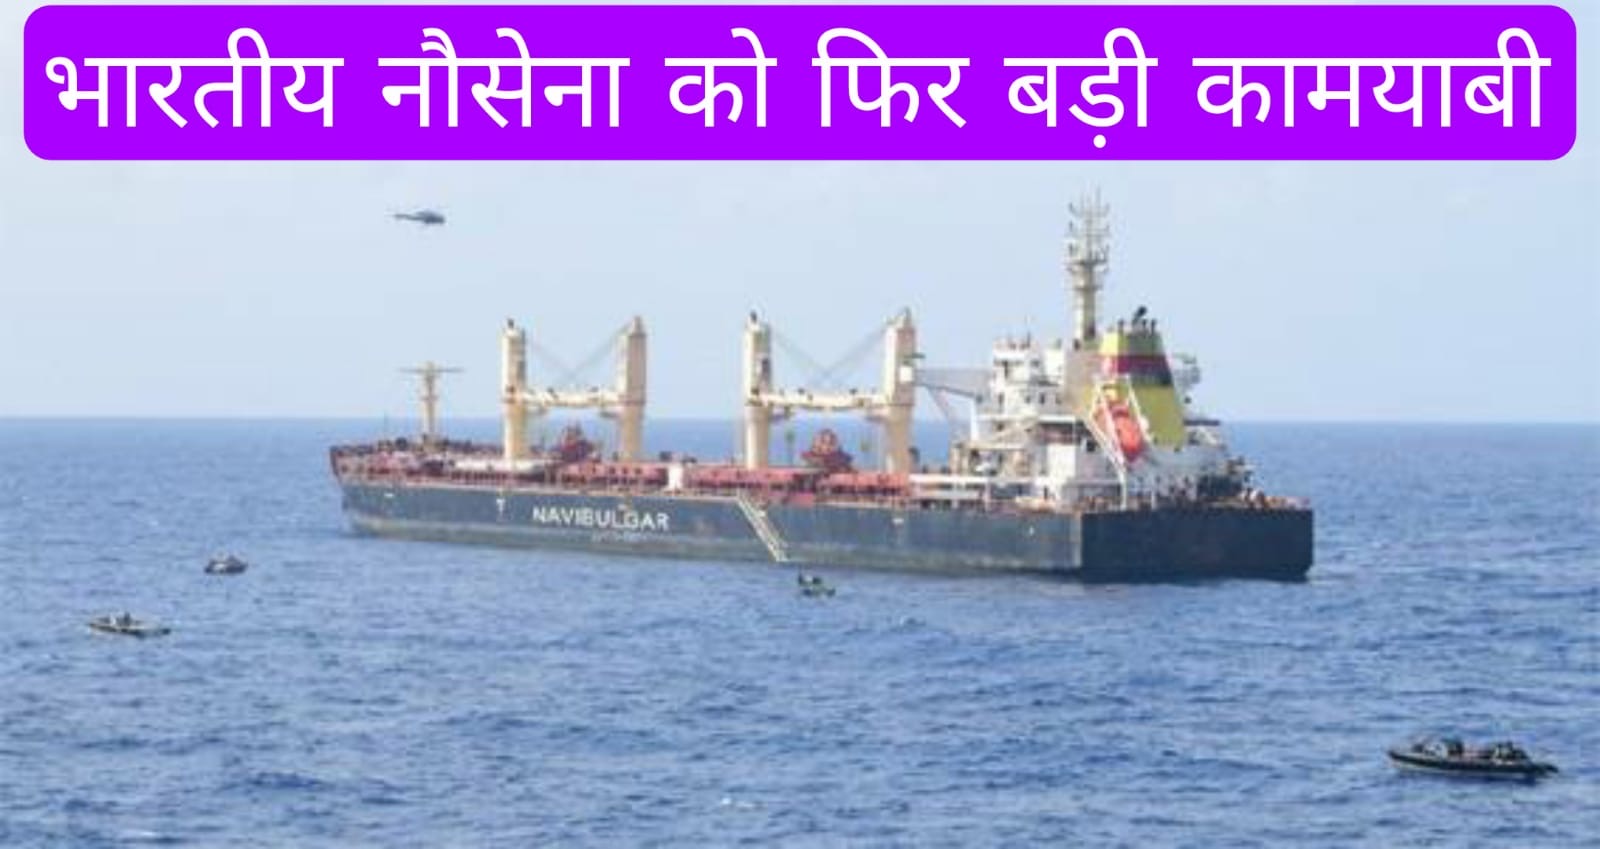 भारतीय नौसेना को फिर बड़ी कामयाबी, 35 समुद्री डाकुओं को सरेंडर करा कर चालक दल को बचाया